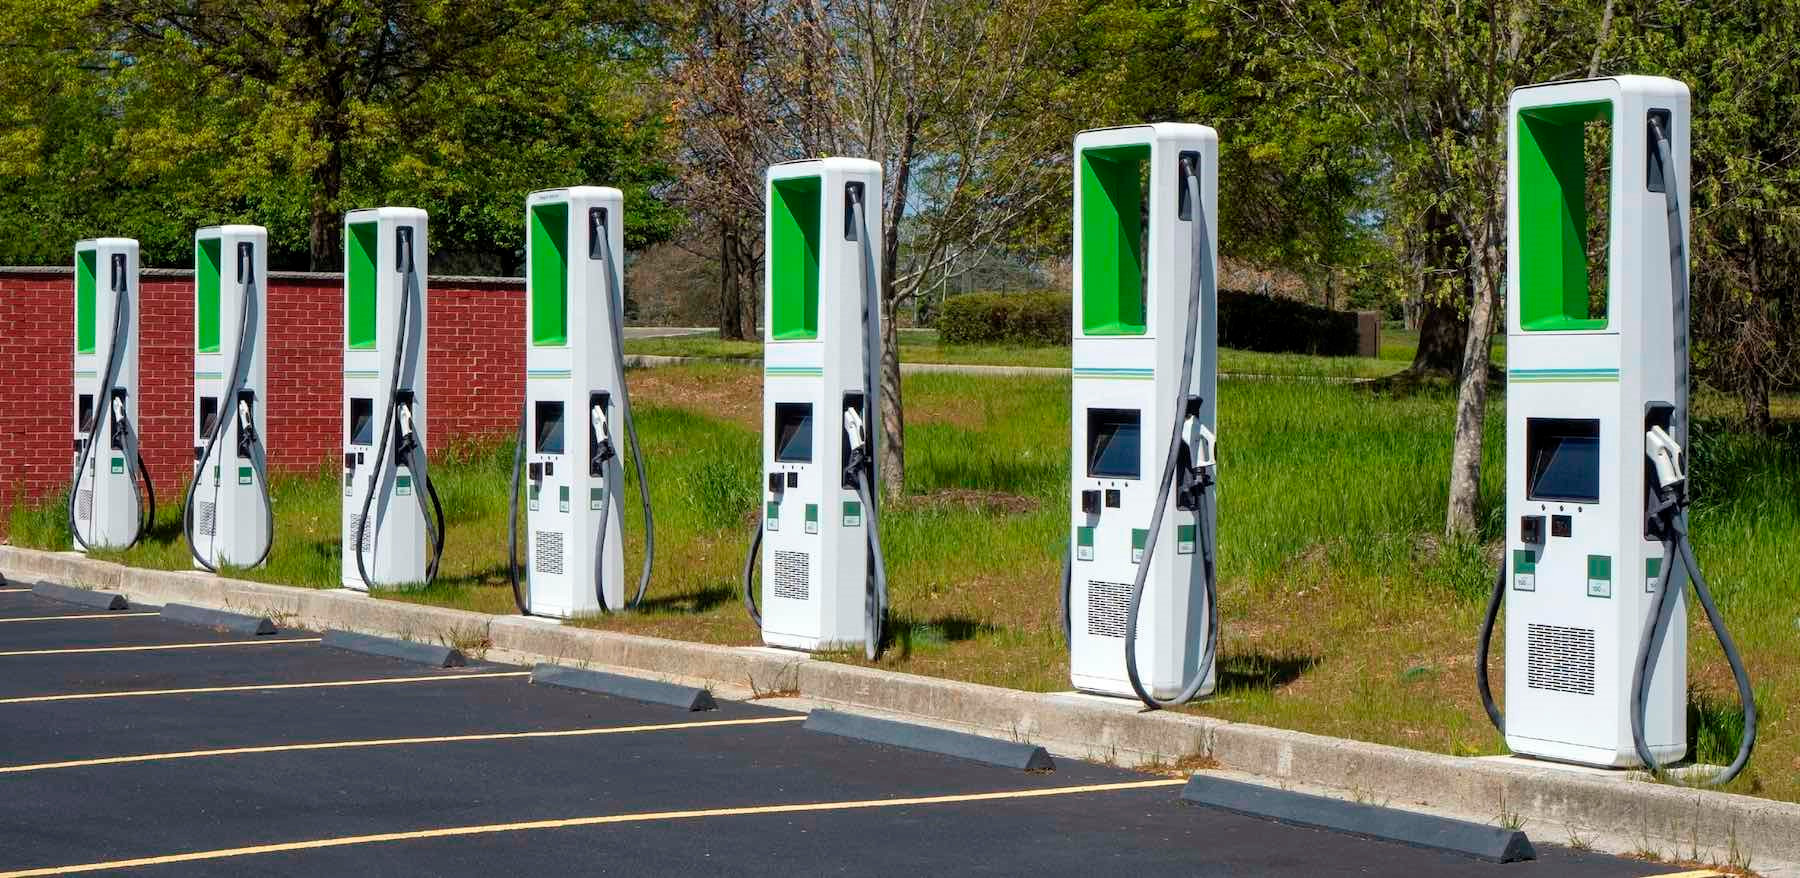 Lo sợ một ngày hệ thống trạm sạc Tesla thống trị nước Mỹ, 7 nhà sản xuất ô tô liền lập liên doanh cung cấp dịch vụ sạc xe điện - liệu VinFast có gia nhập? - Ảnh 1.